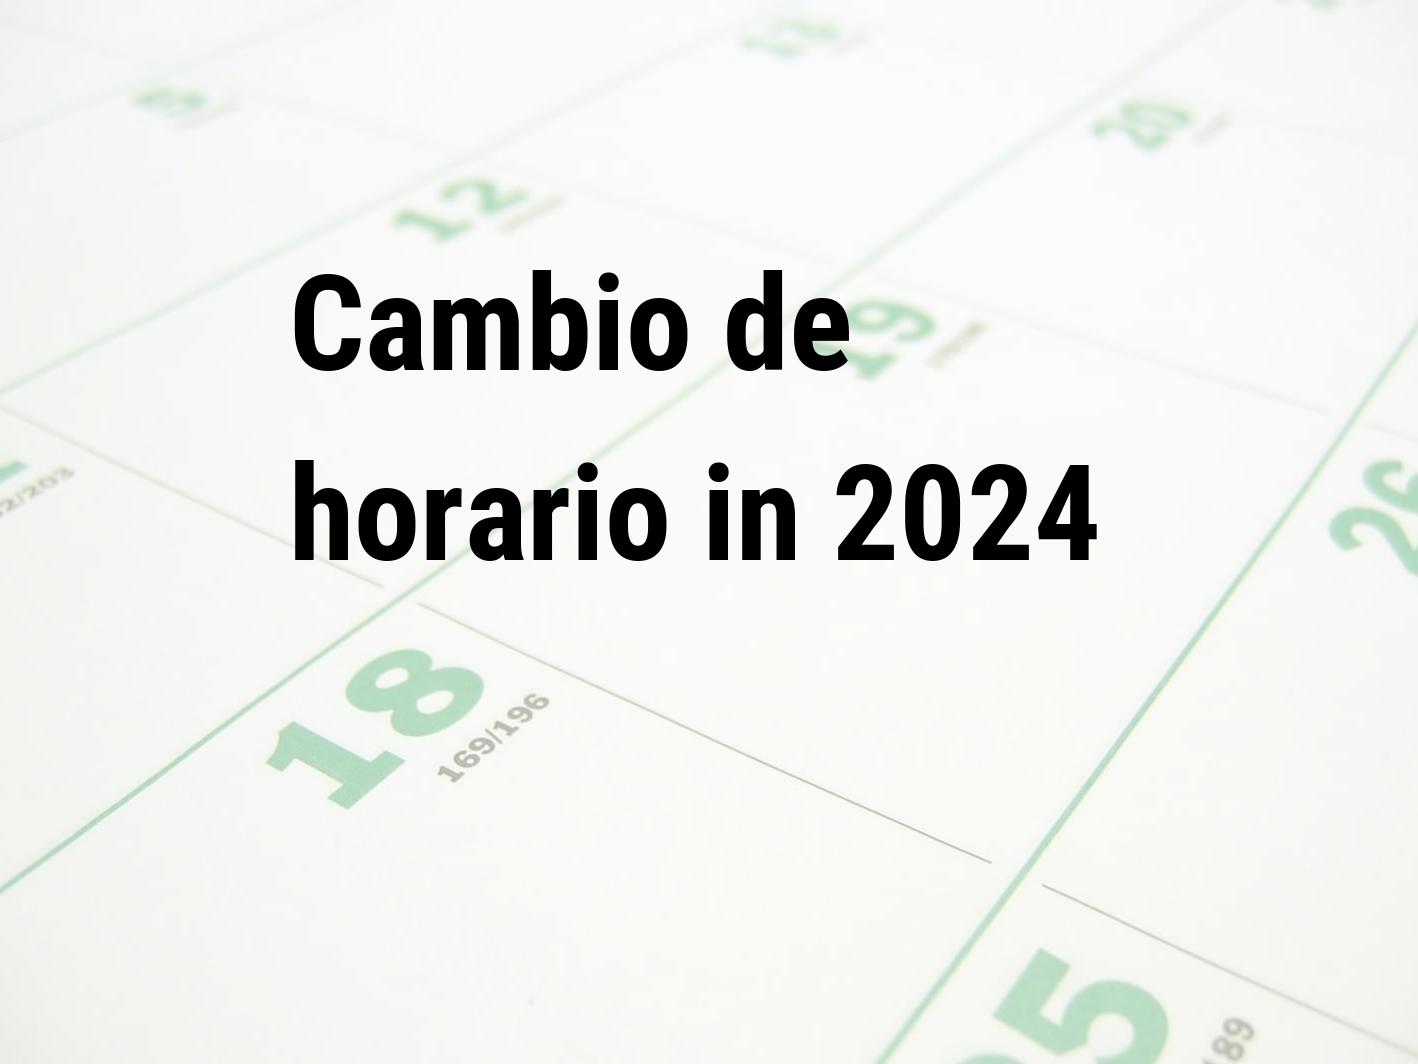 Cambio de horario 2024 Calendar Center